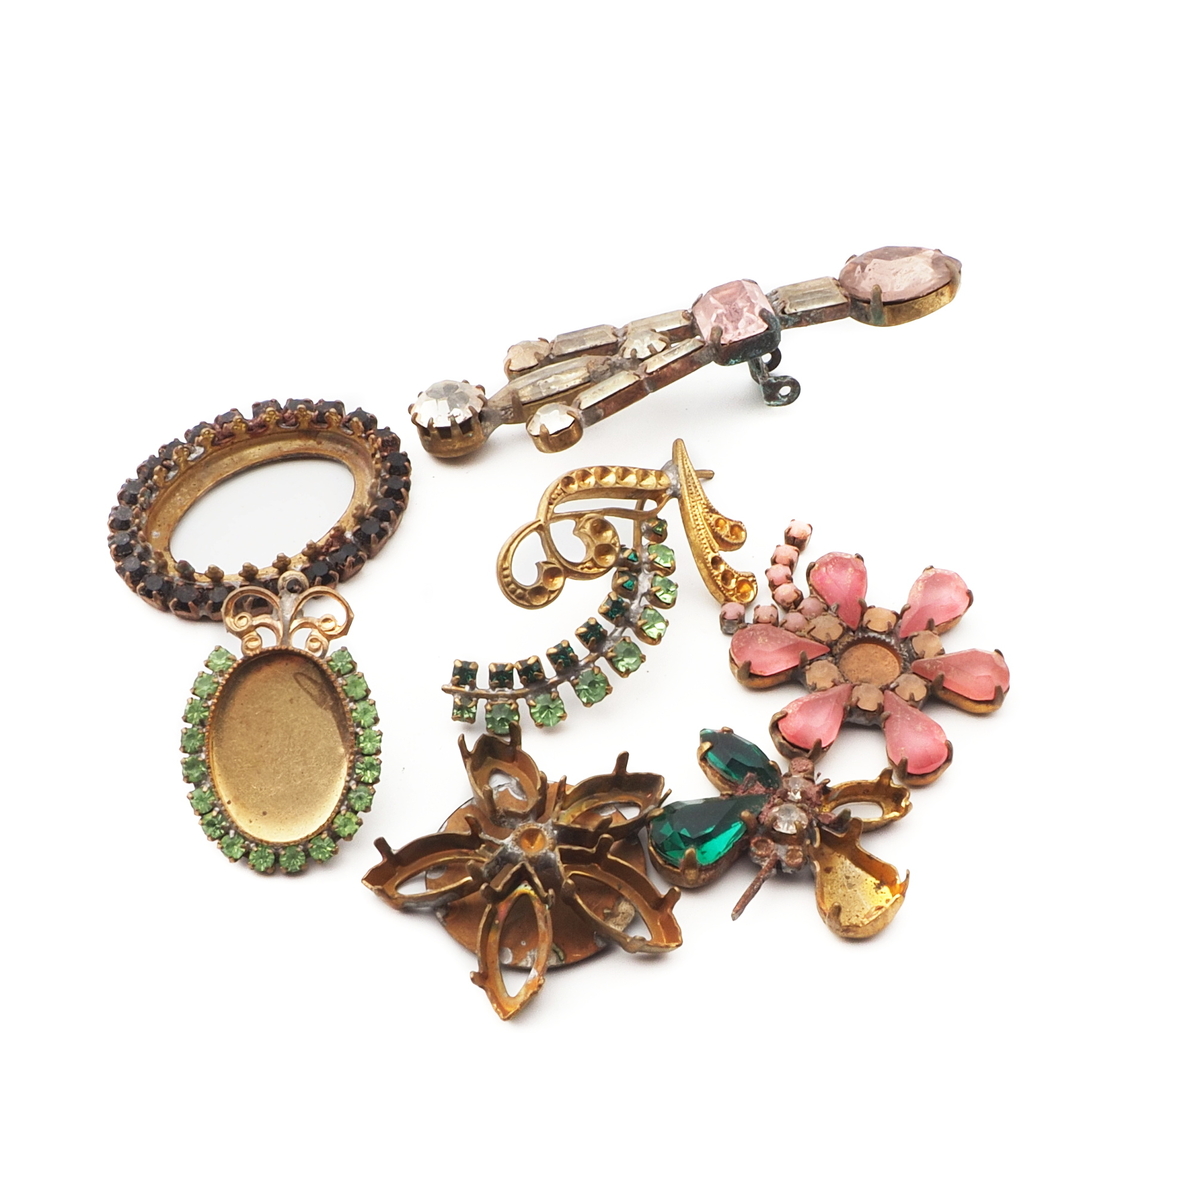 Lot Czech vintage broken unfinished rhinestone jewelry earring brooch elements